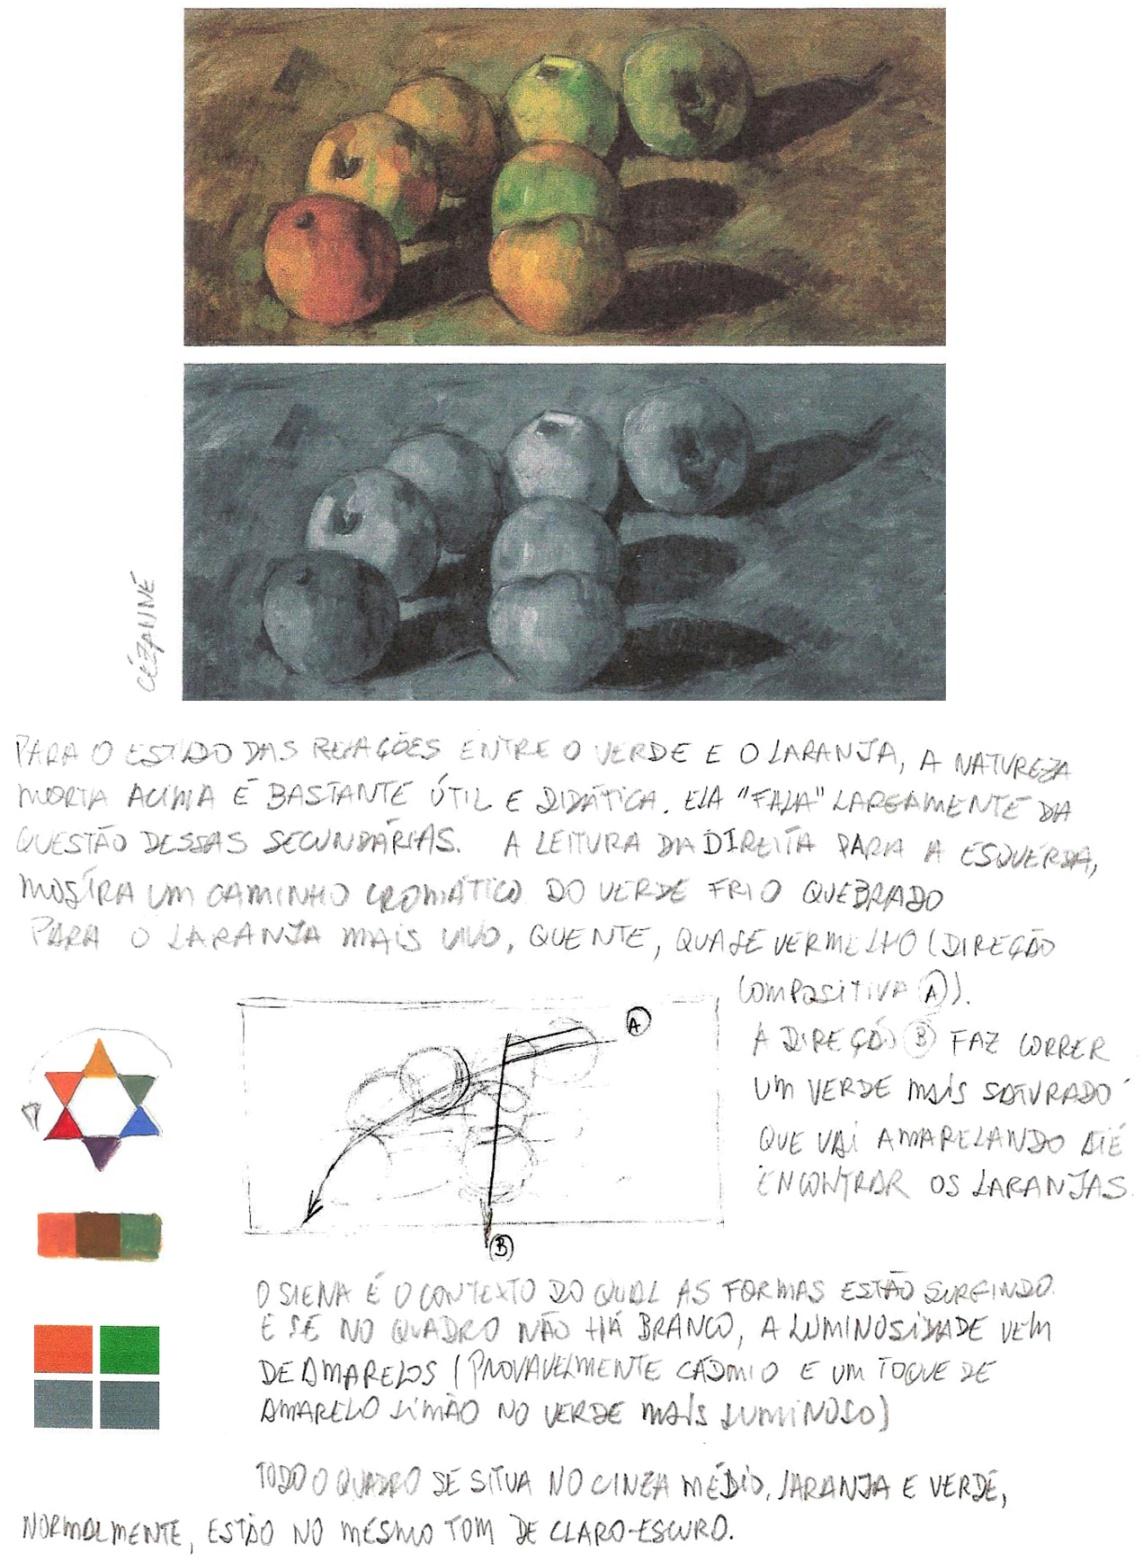 Análise 1 Tomei Cézanne como guia, pois ele versa intensamente sobre meu tema plástico: verdes e laranjas.